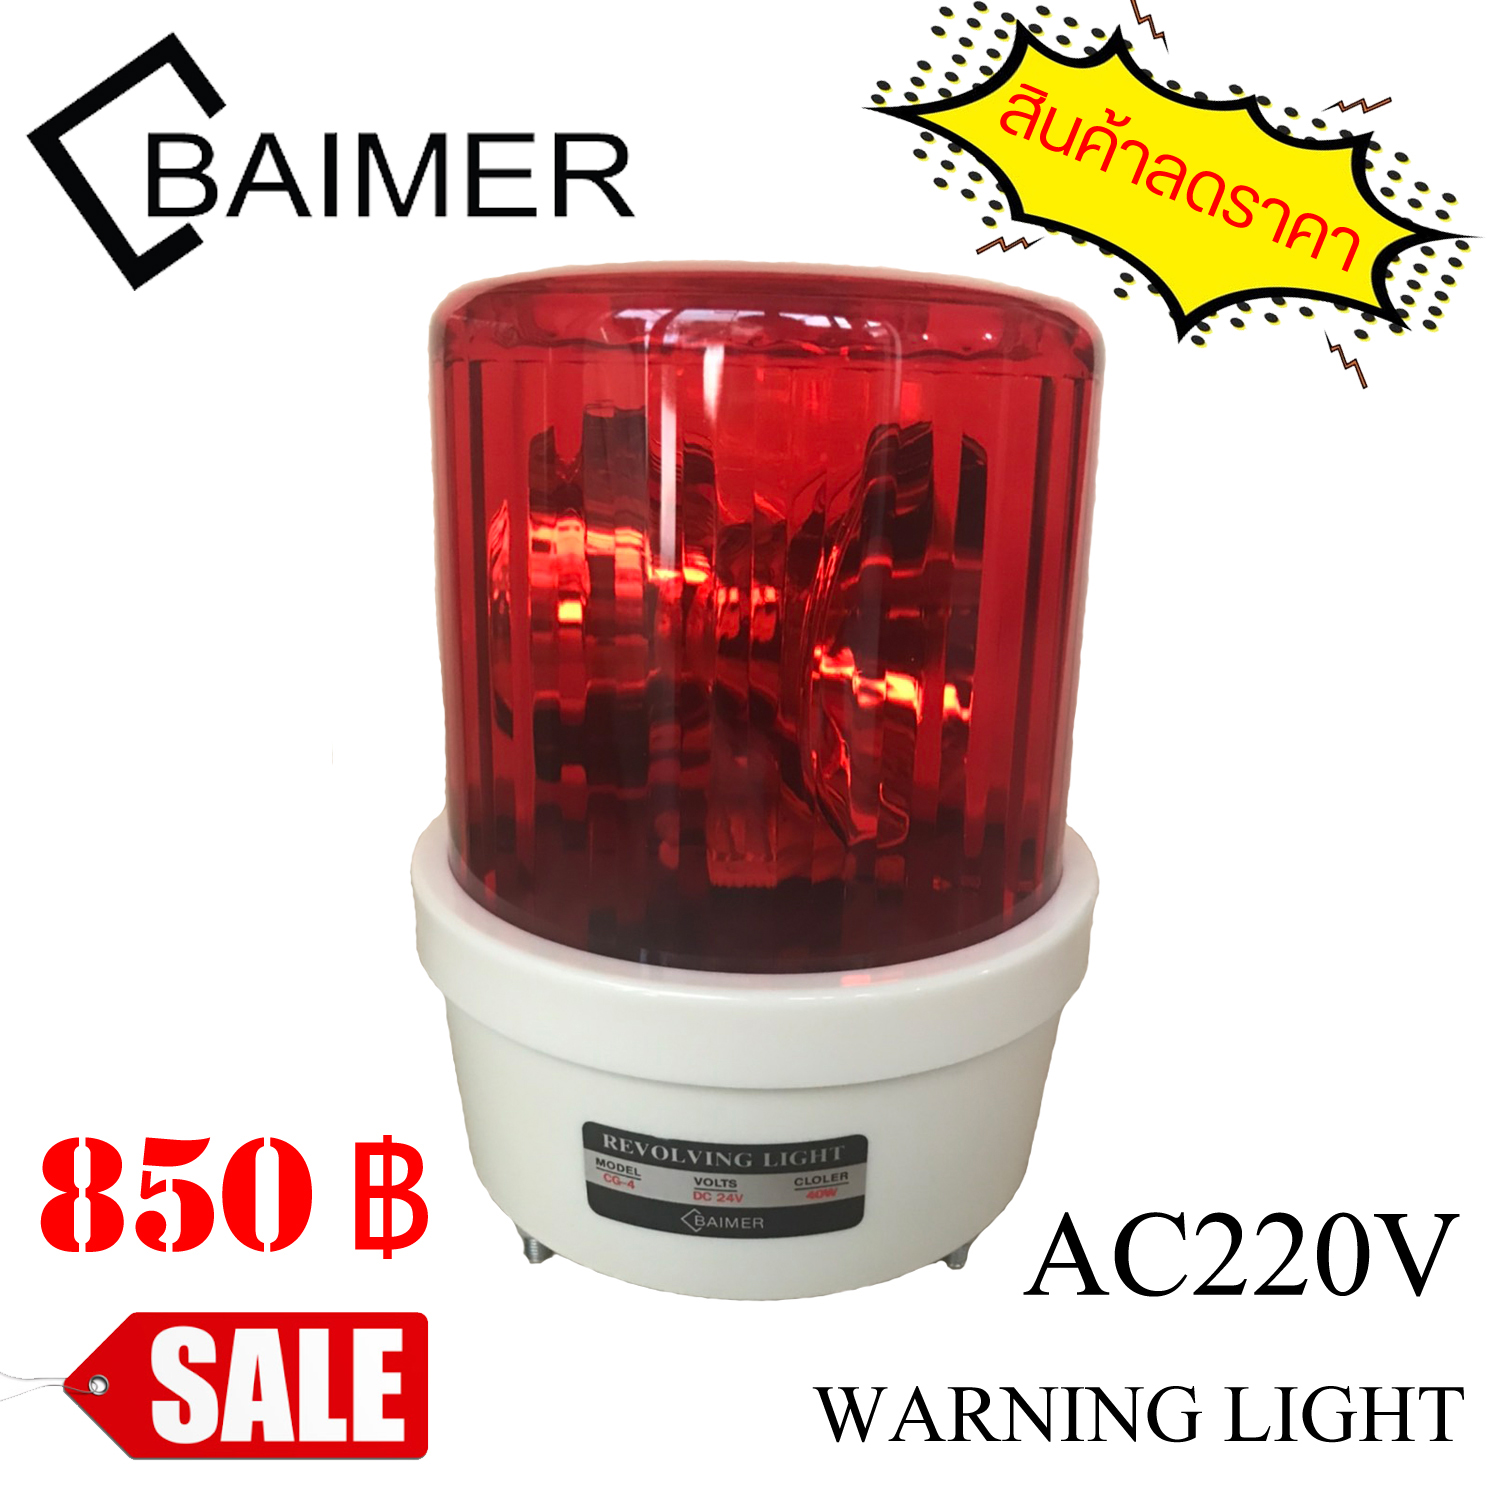 ไฟหมุน Rotary Warning Light ขนาด 7 นิ้ว ฐานยึดสามขา รุ่น CG ใช้ไฟ AC220V สีแดง (สินค้าลดราคา)